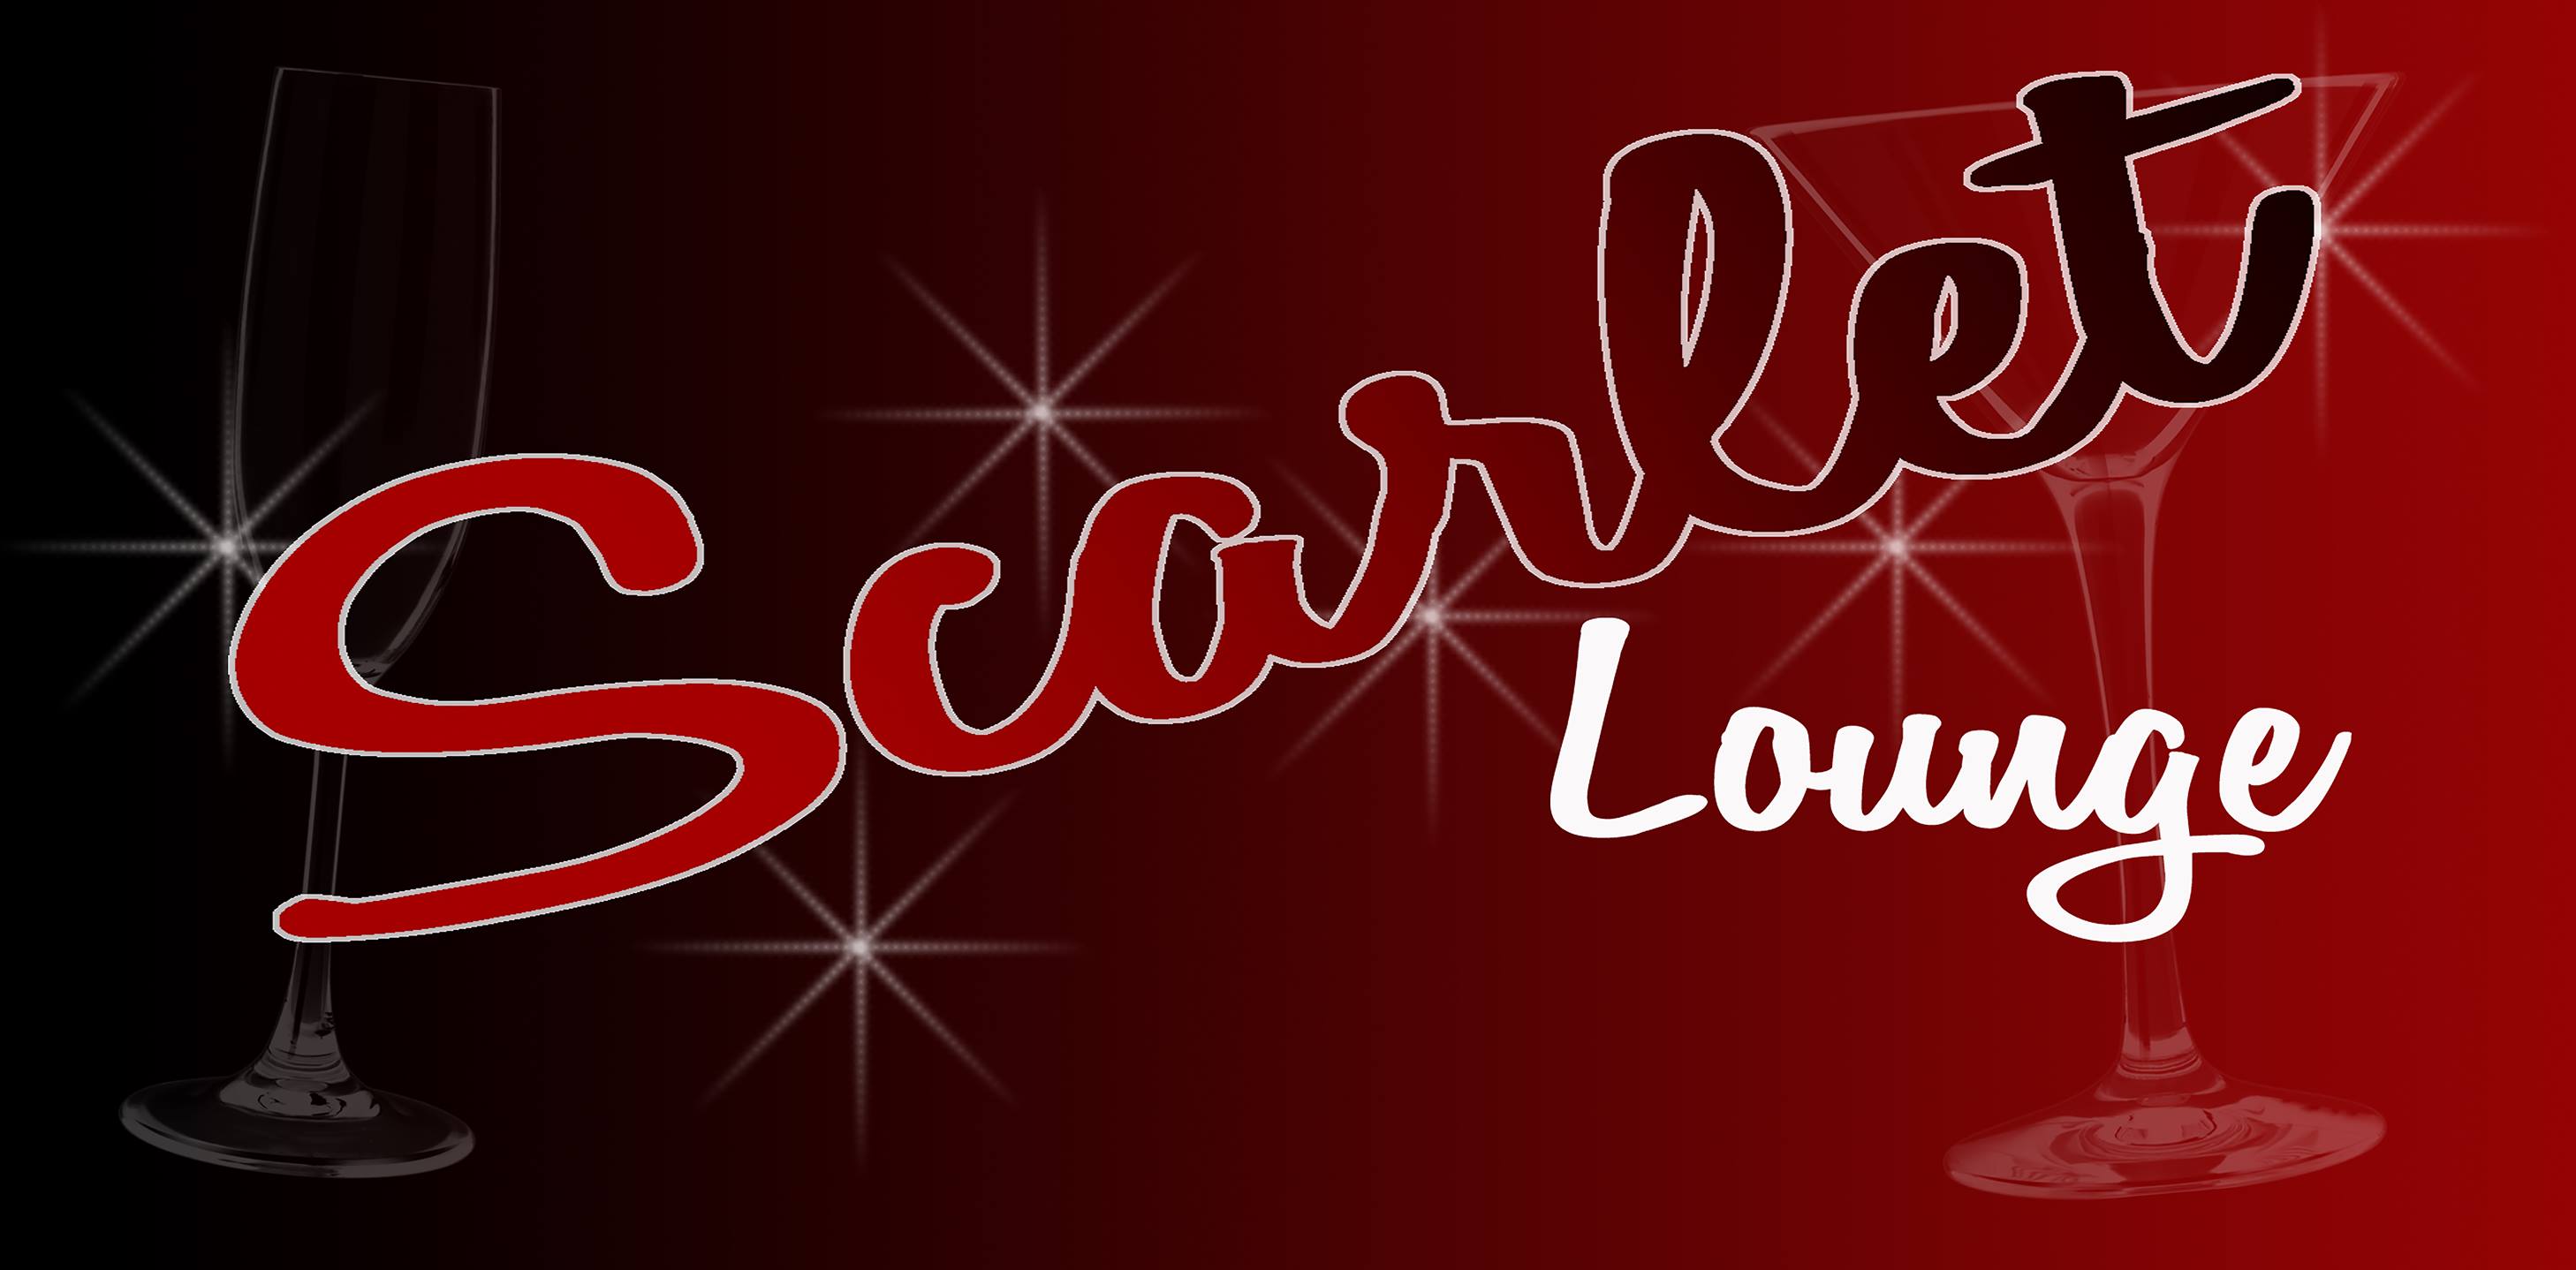 Banner for Scarlet Lounge